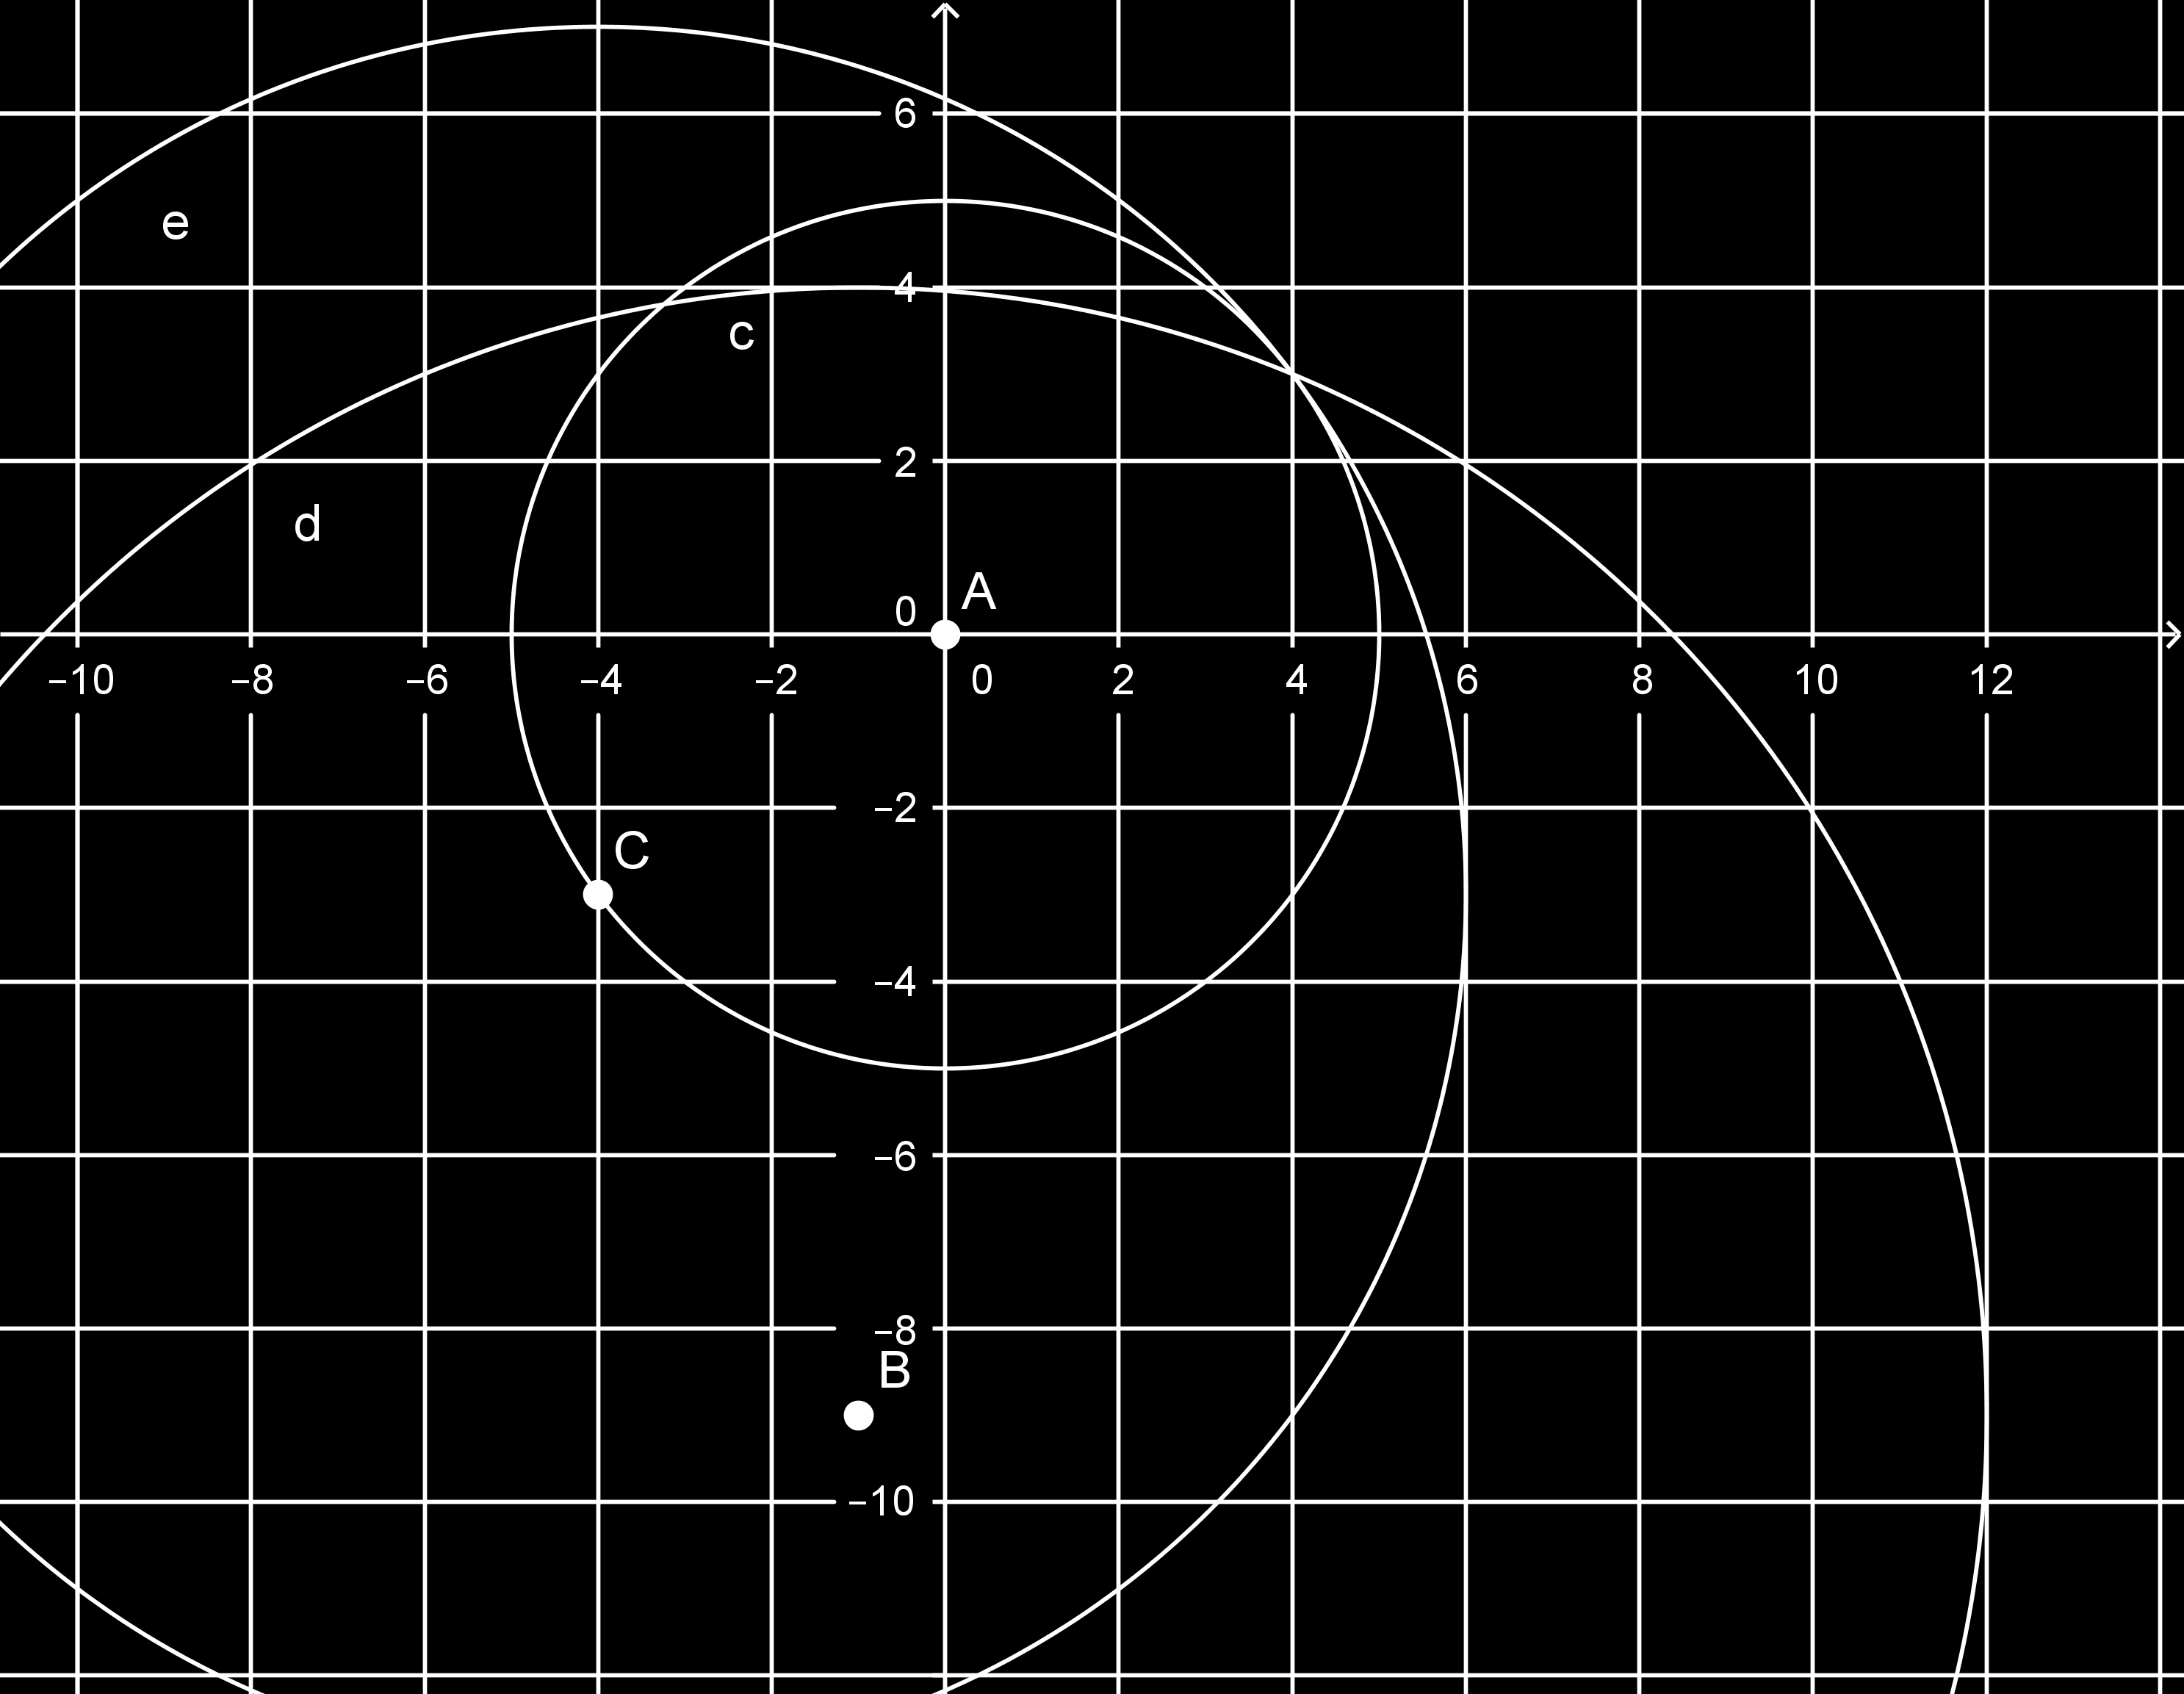 5 egység sugarú kört, B középpontú, 13 egység sugarú kört, C középpontú, 10 egység sugarú kört. Ezek közös pontja adja a megoldást.